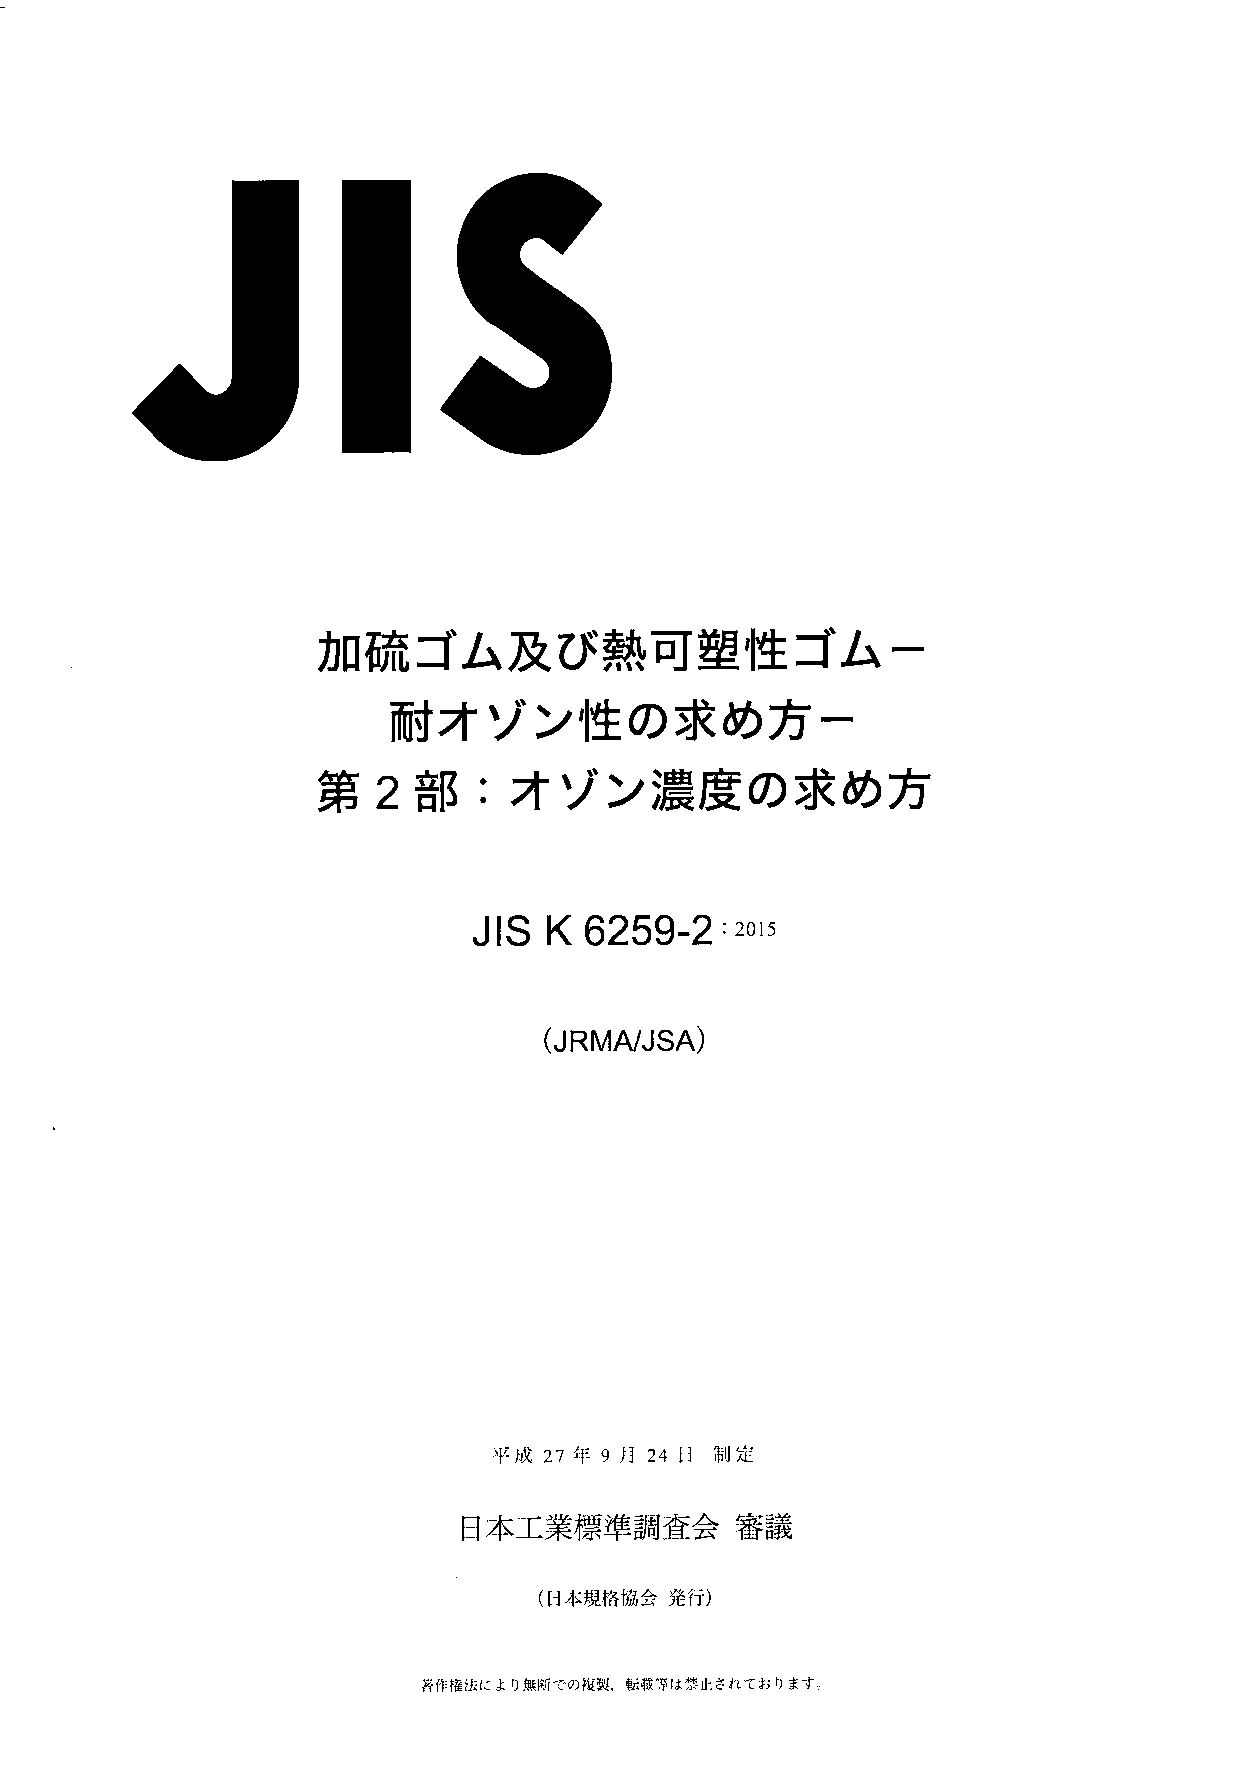 JIS K 6259-2:2015